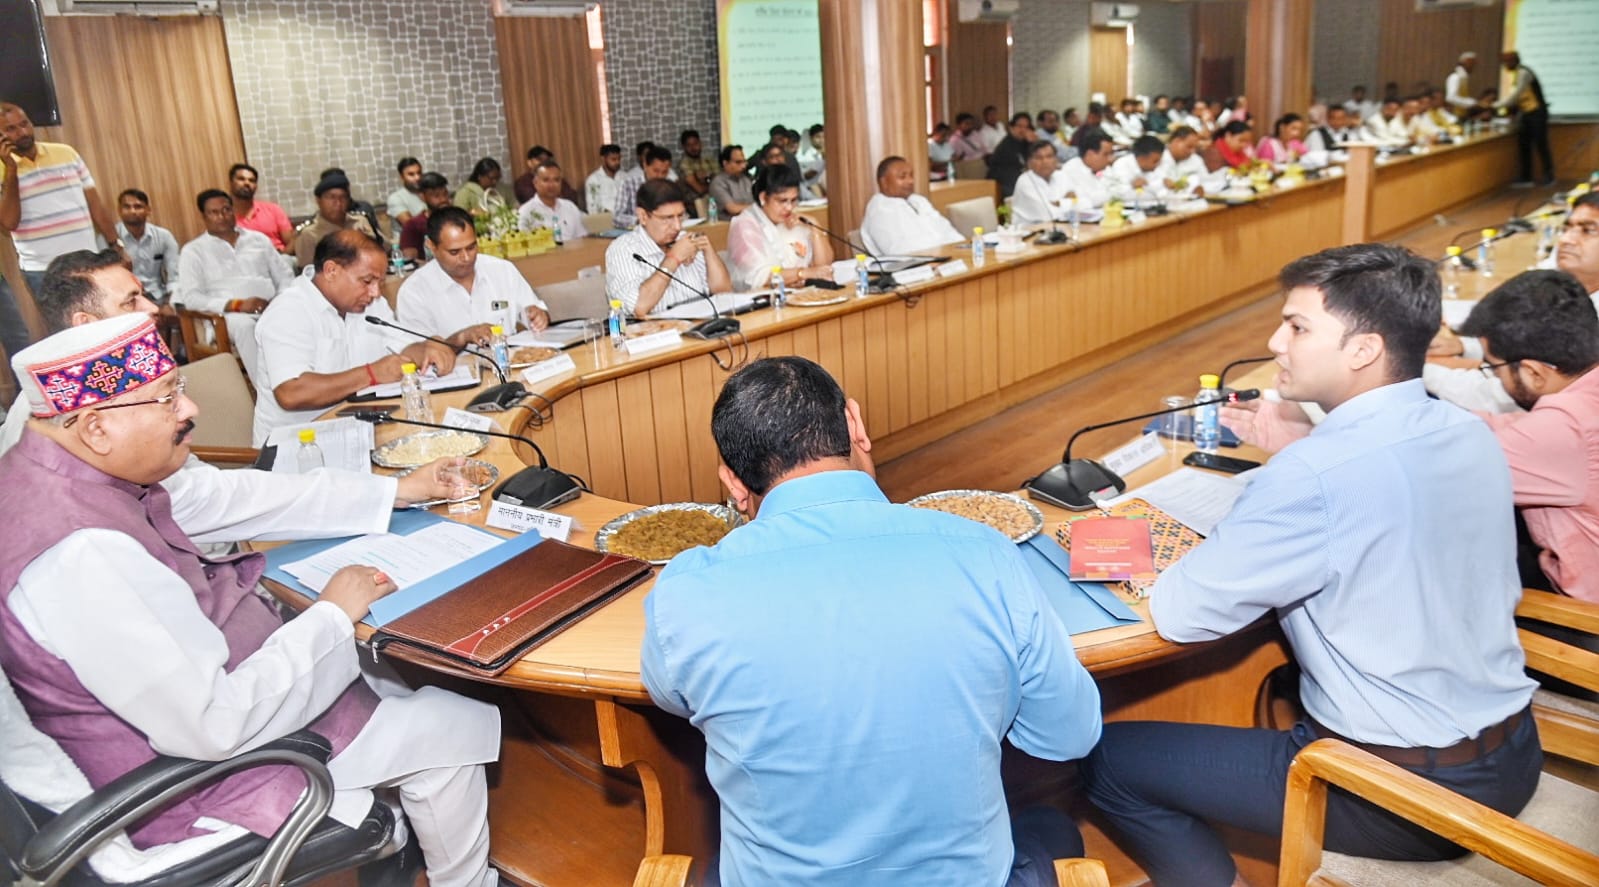 haridwar news कैबिनेट मंत्री सतपाल महाराज की अध्यक्षता में जिला योजना समिति की बैठक हुई संपन्न